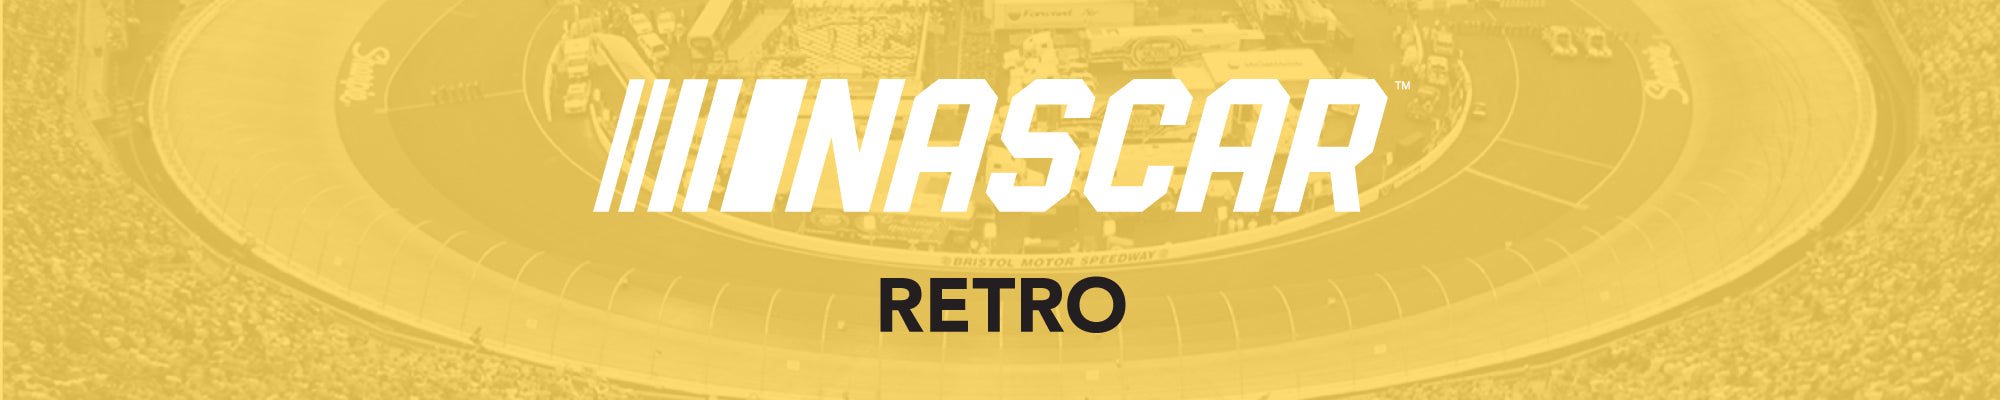 NASCAR Retro